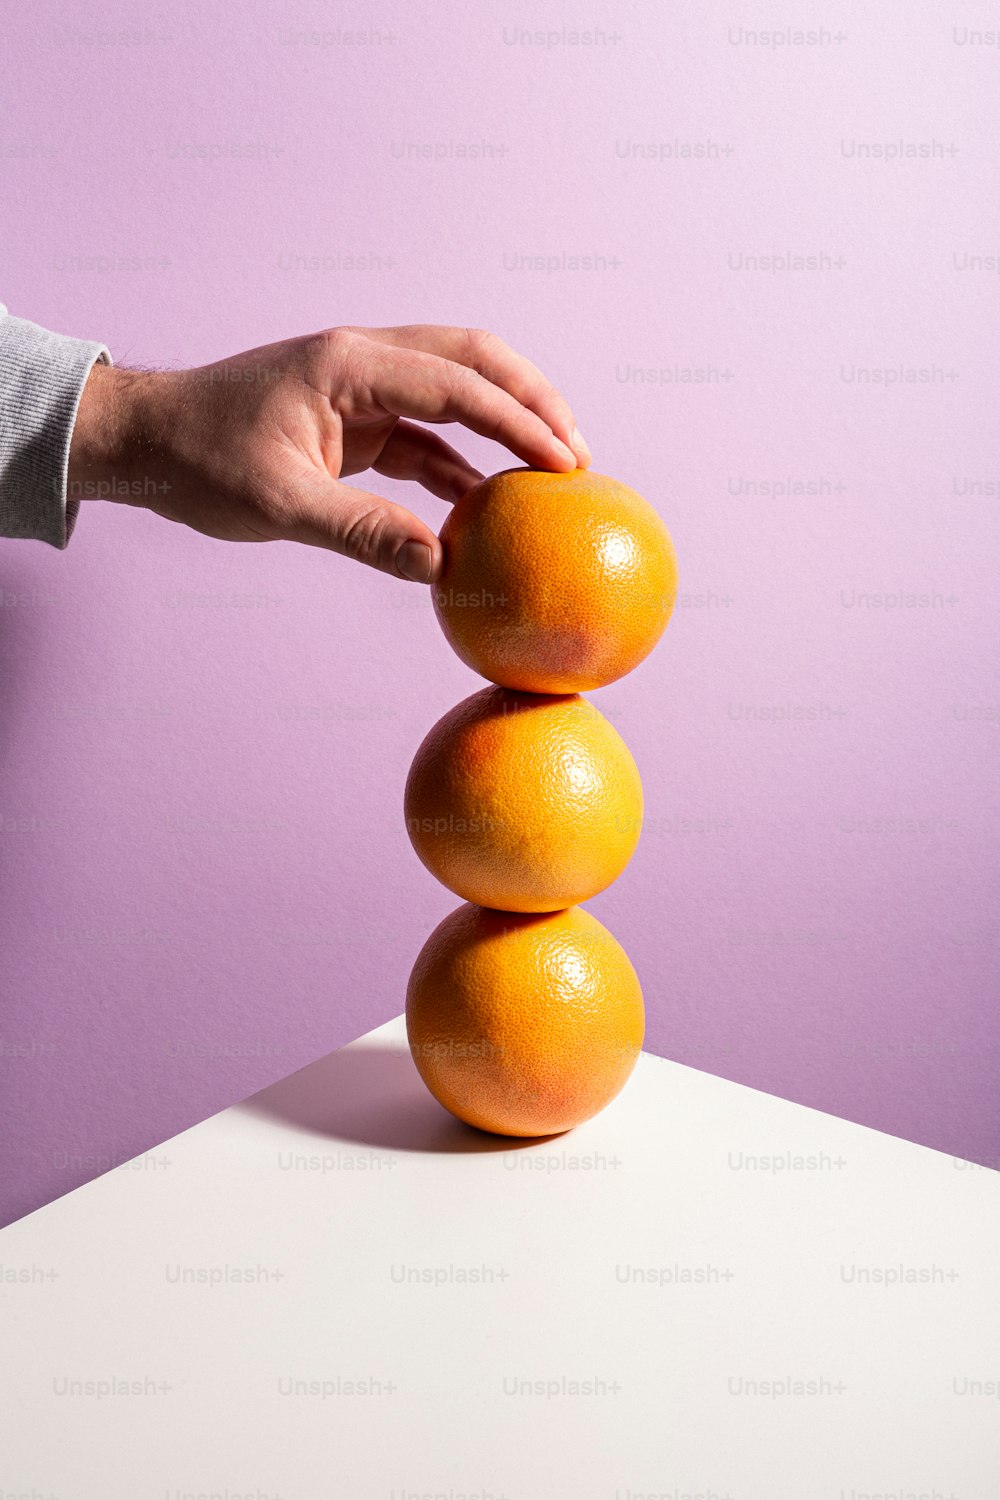 Una persona apilando naranjas una encima de la otra